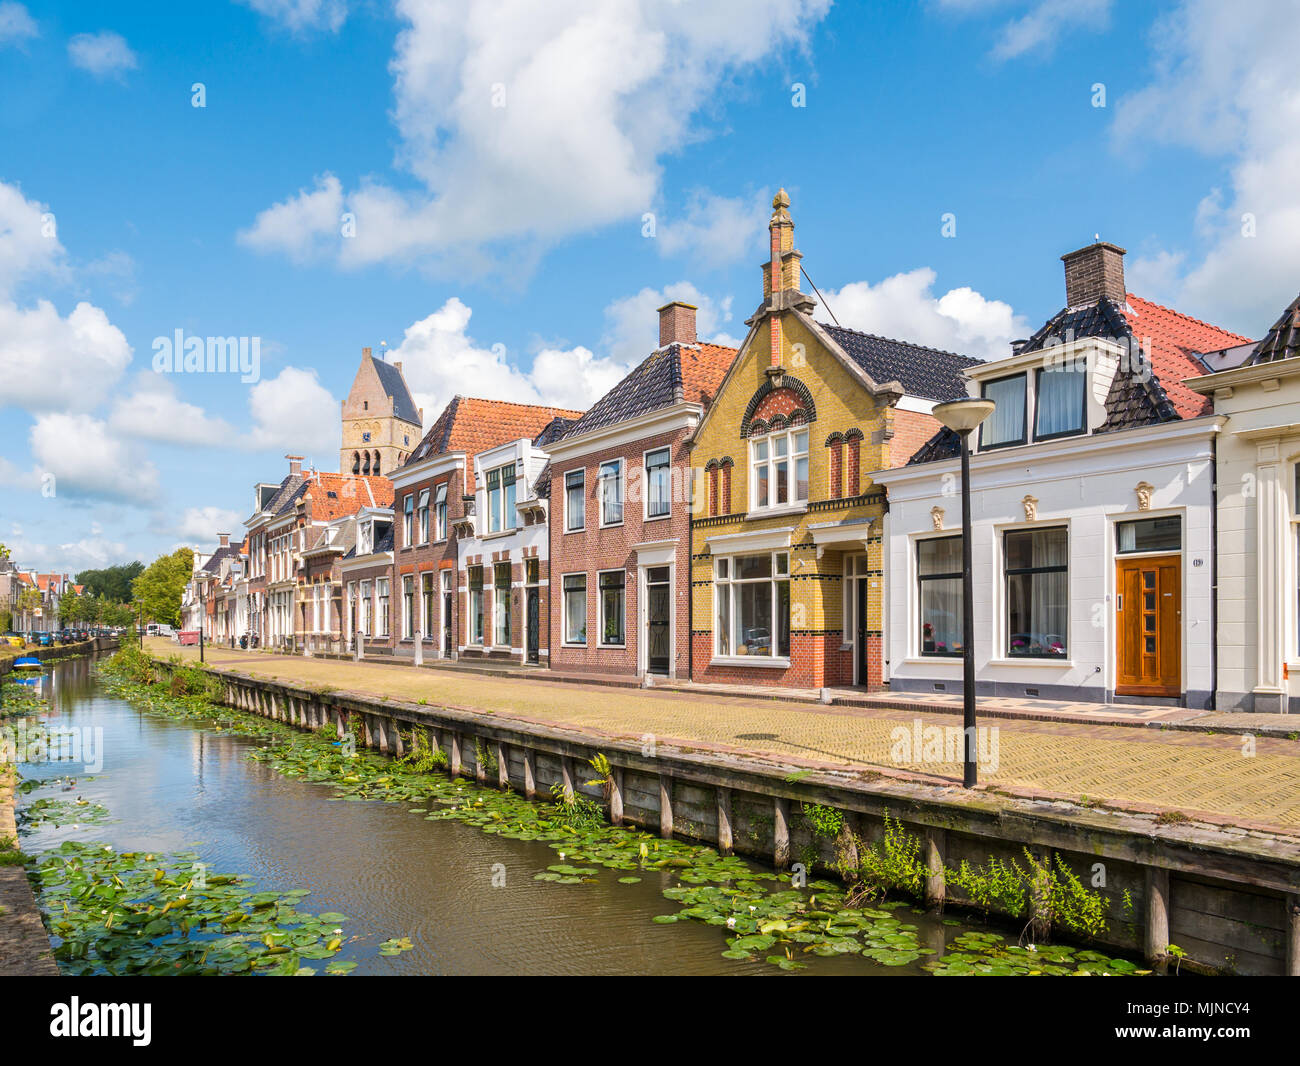 Scena di strada di Kleine Dijlakker canal e la torre della chiesa protestante nella vecchia città di Bolsward, Friesland, Paesi Bassi Foto Stock